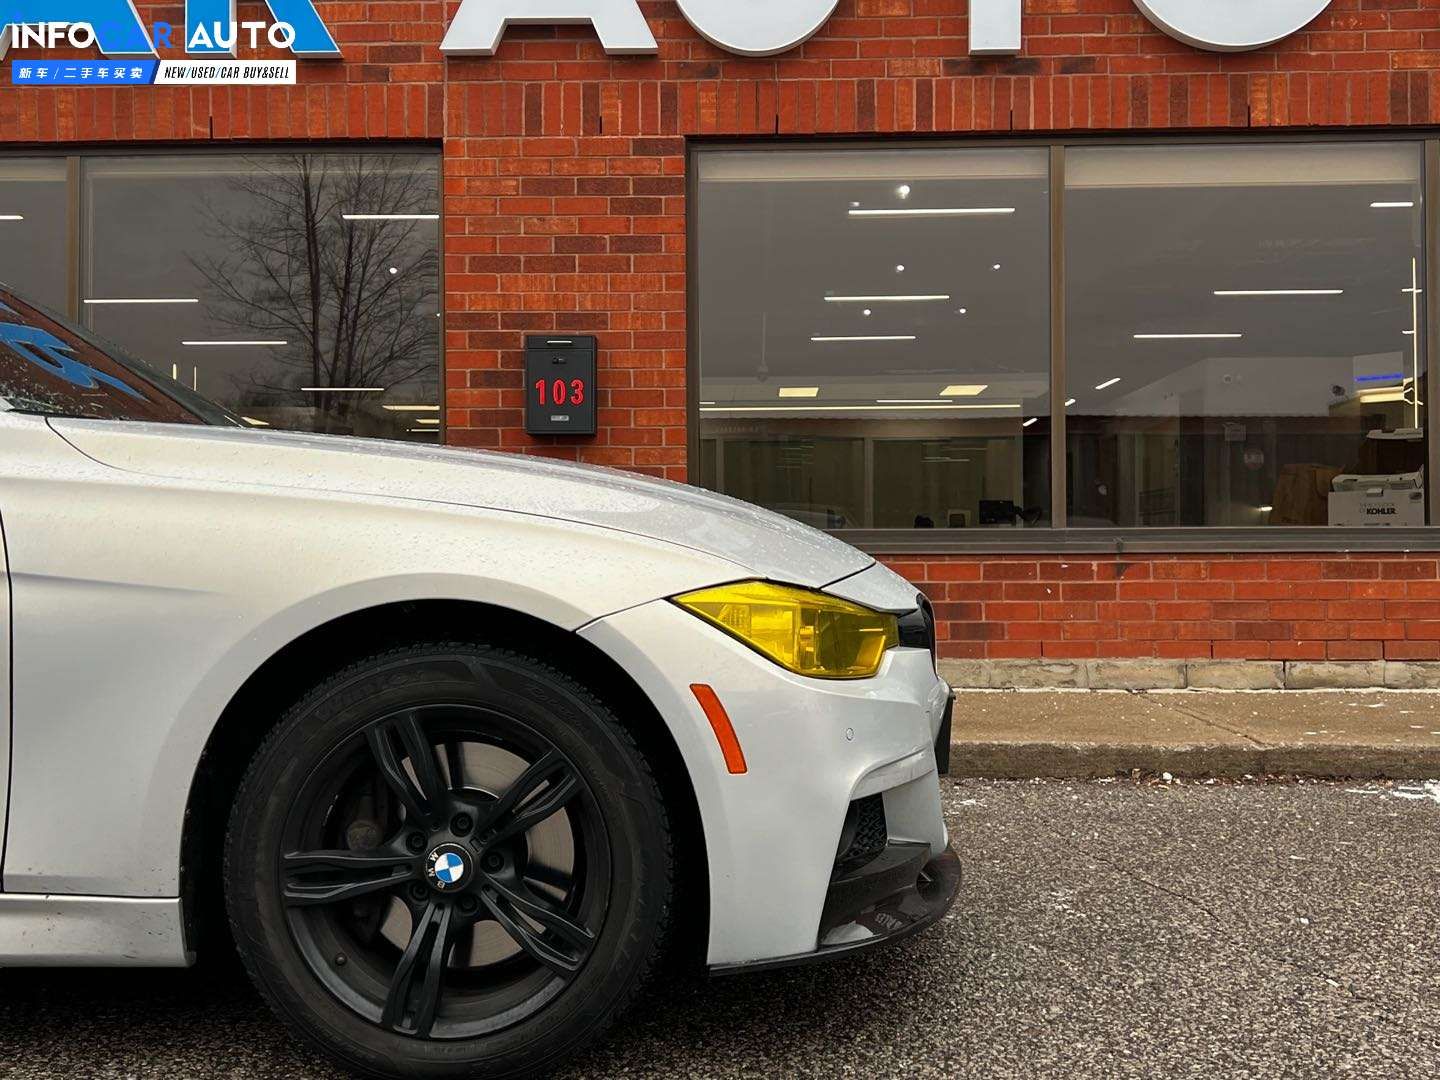 2015 BMW 3-Series 335 - INFOCAR - Toronto Auto Trading Platform